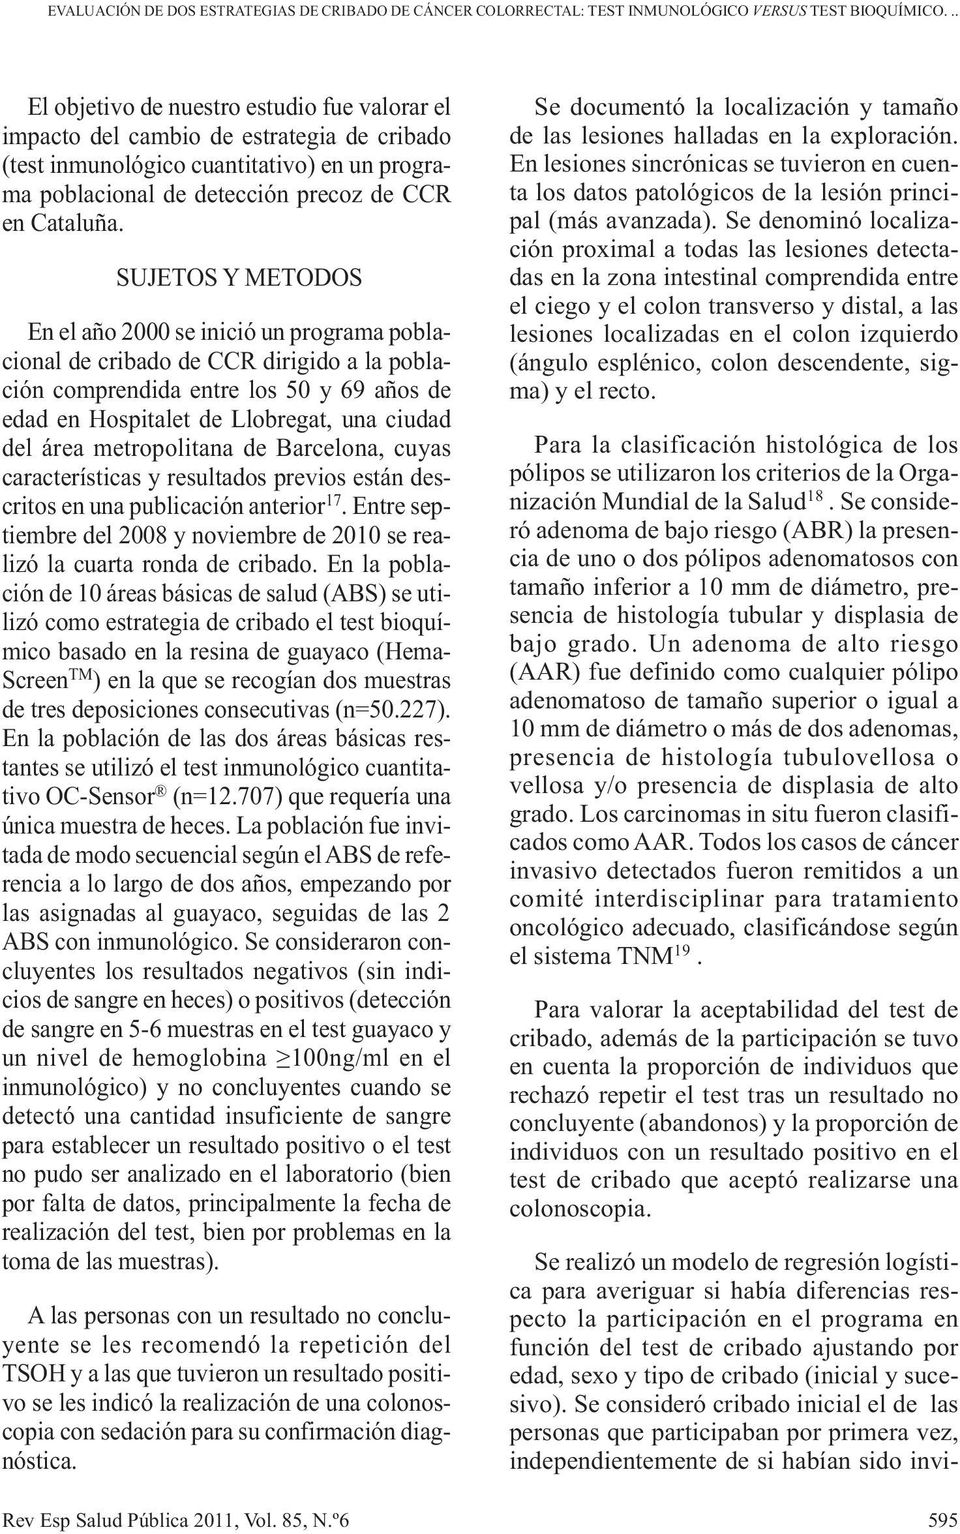 SUJETOS Y METODOS En el año 2000 se inició un programa poblacional de cribado de CCR dirigido a la población comprendida entre los 50 y 69 años de edad en Hospitalet de Llobregat, una ciudad del área